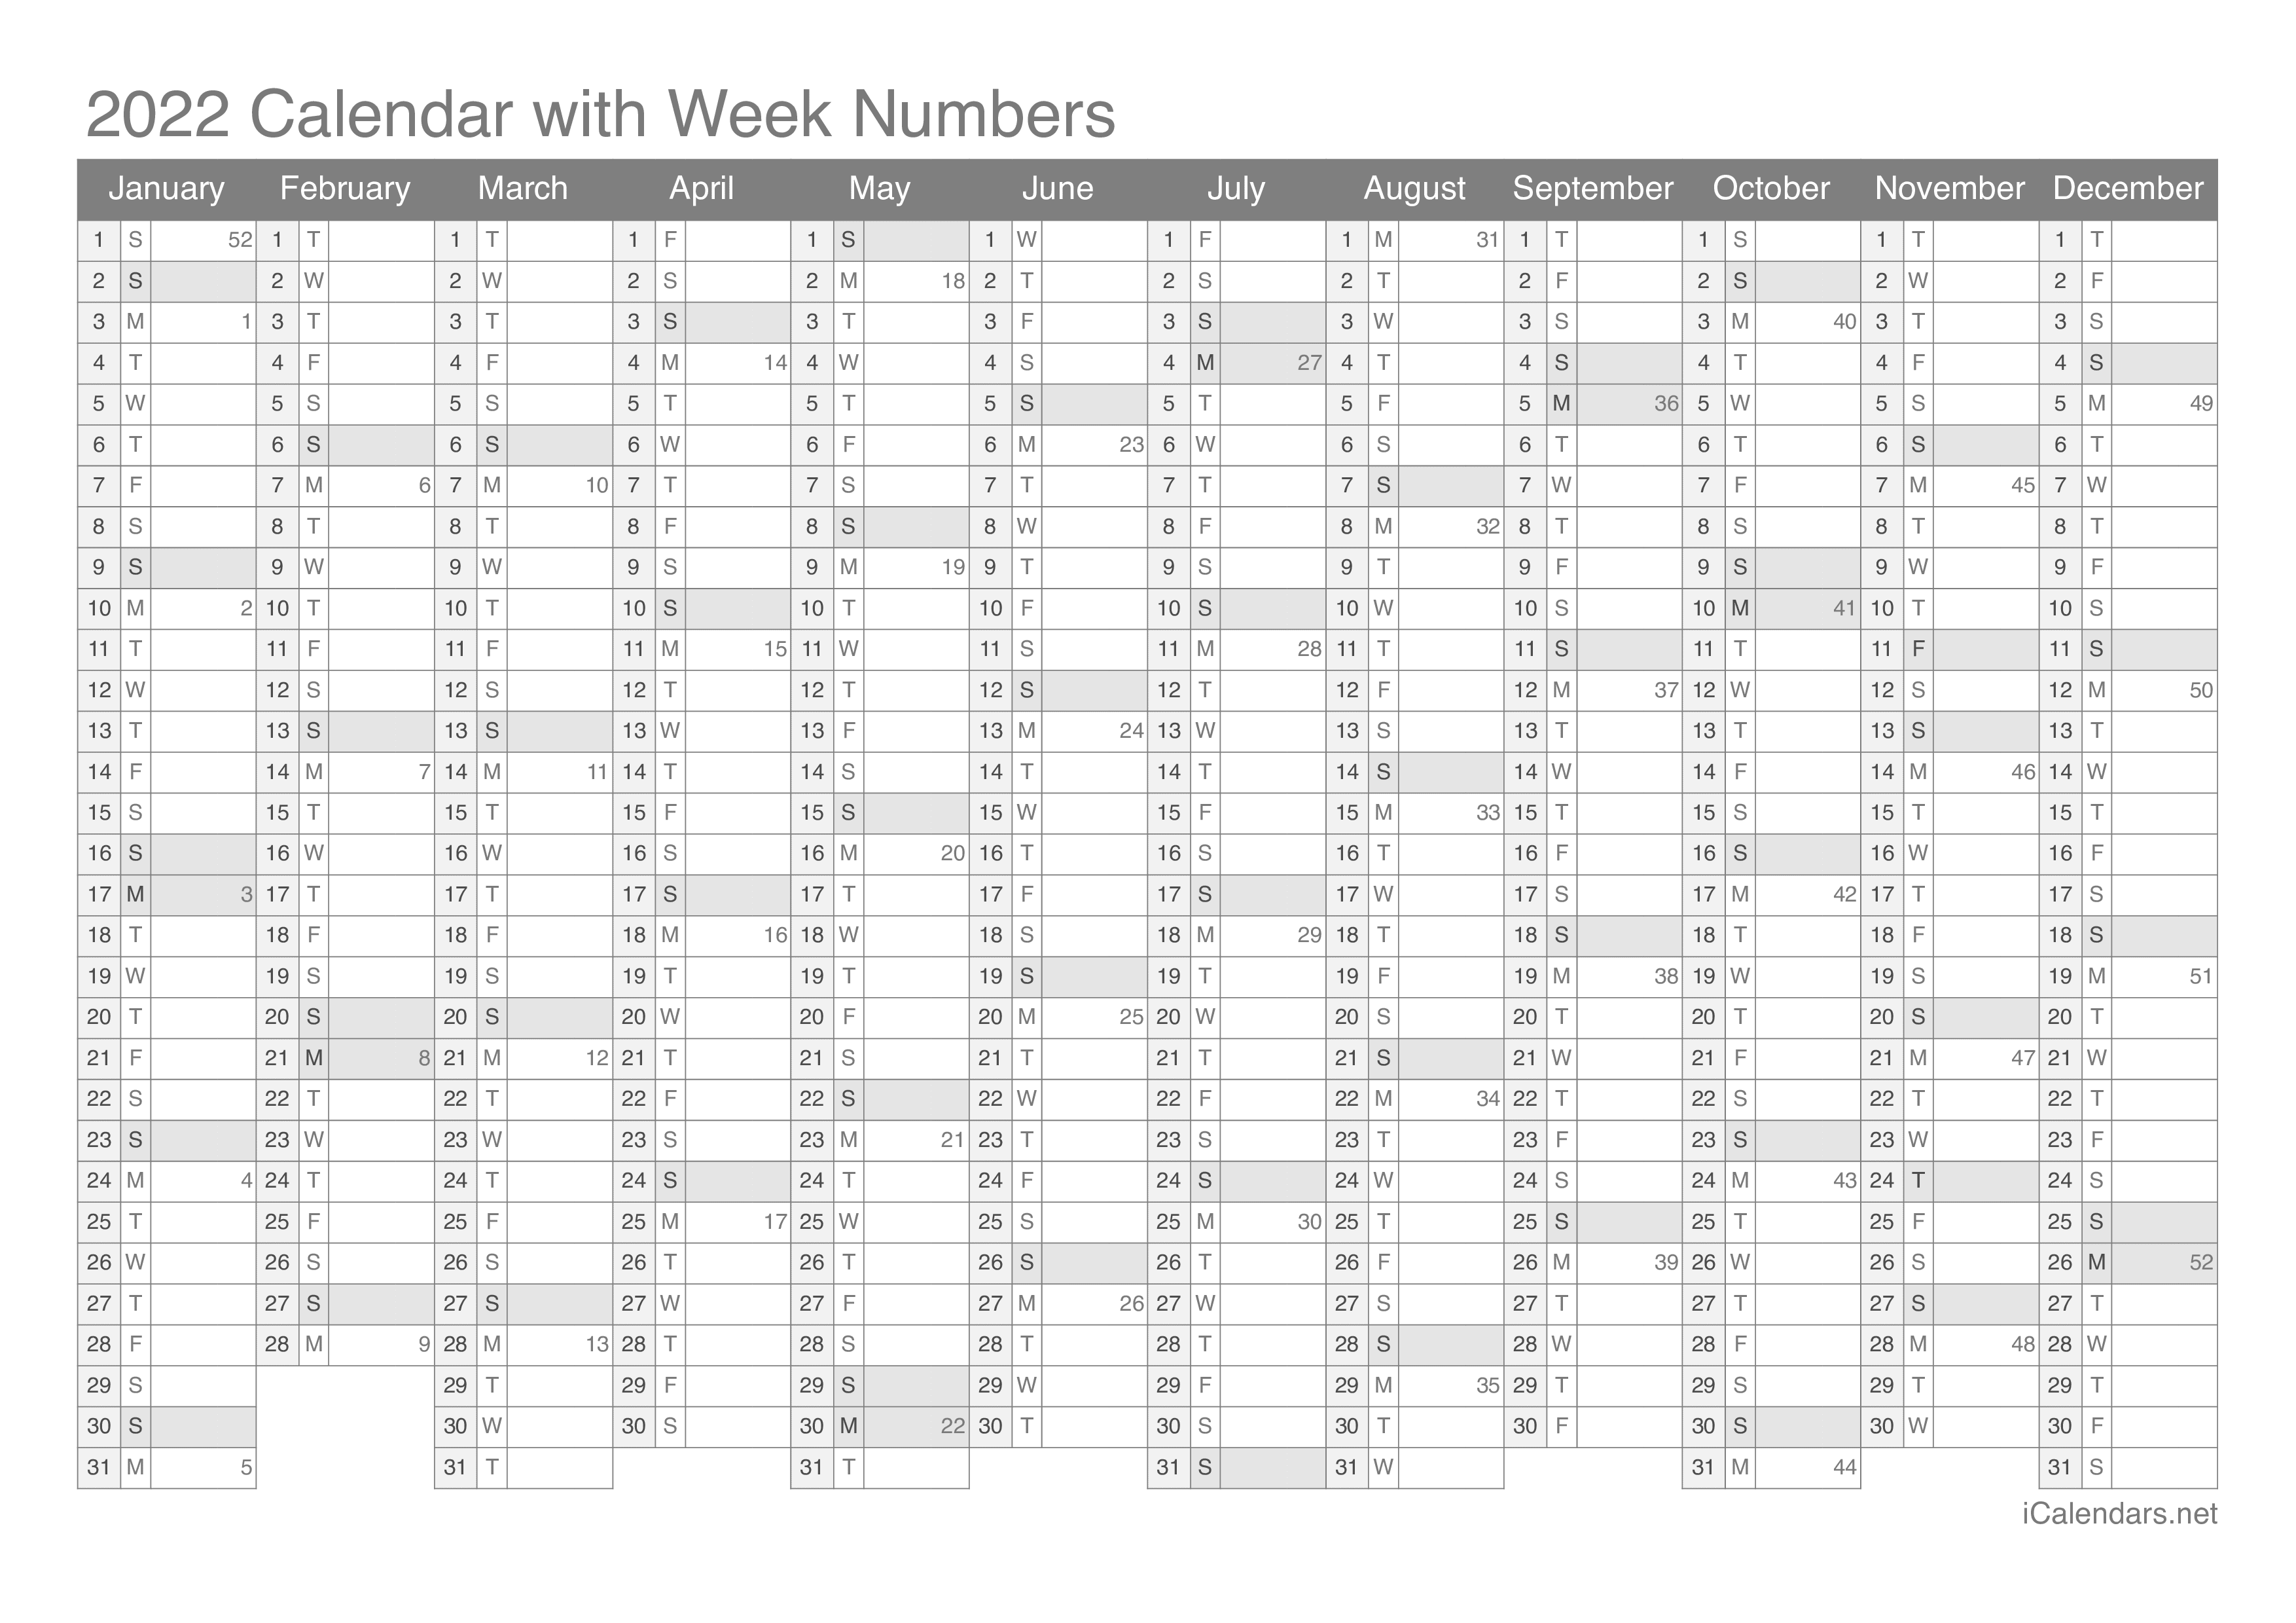 2022 Calendar with week numbers